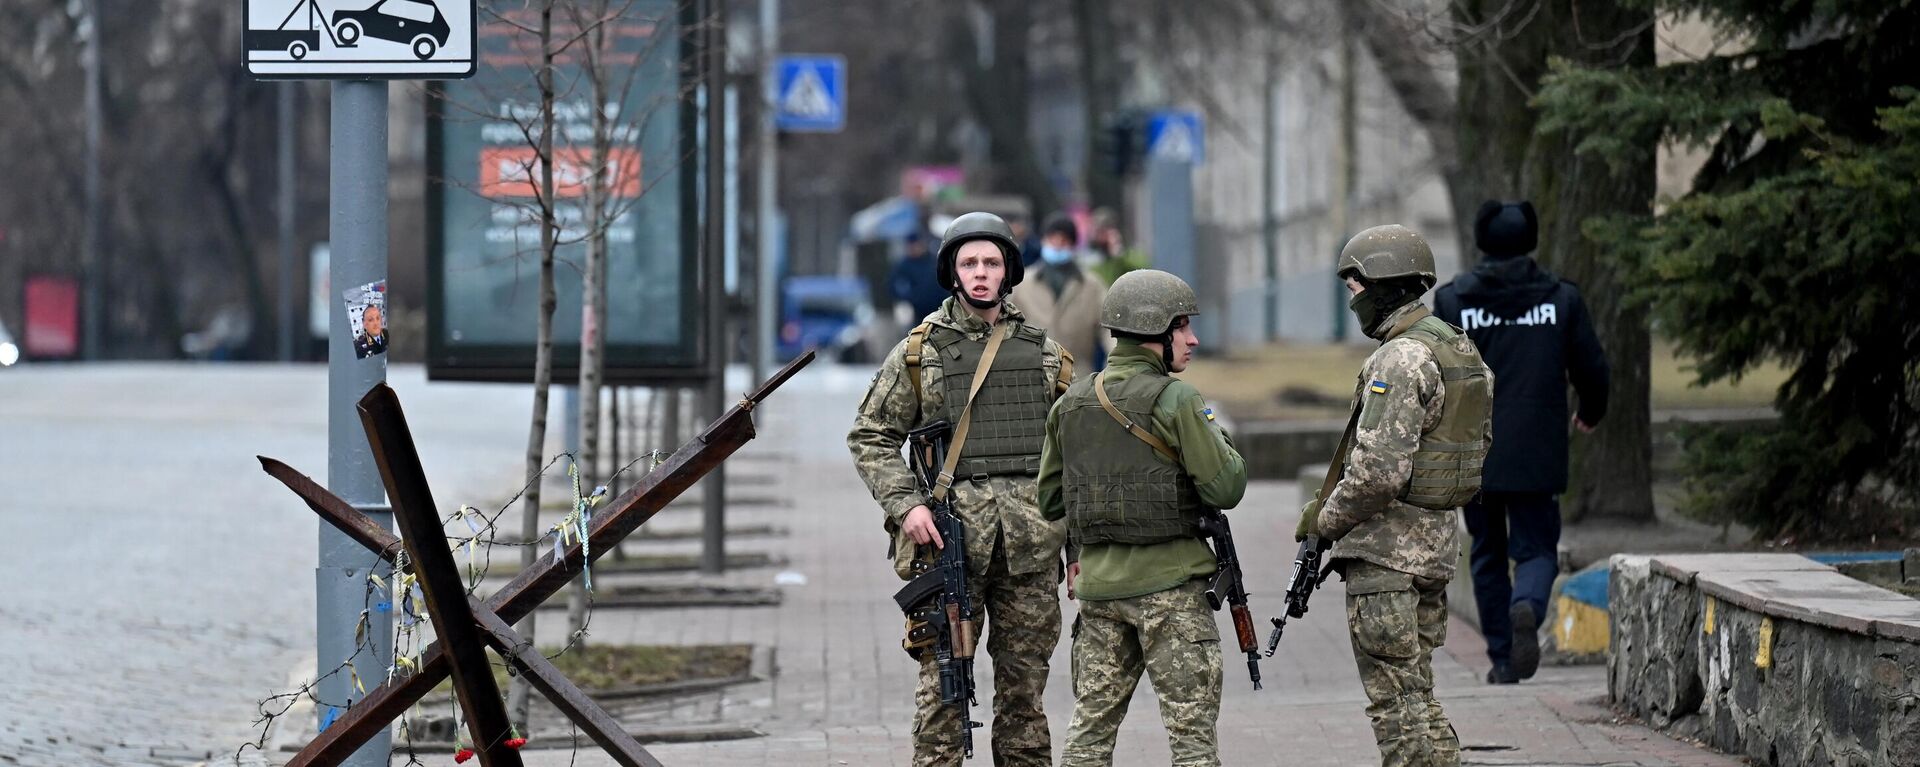 Военнослужащие Вооруженных сил Украины блокируют дорогу в так называемом правительственном квартале в Киеве - Sputnik Аҧсны, 1920, 01.03.2022